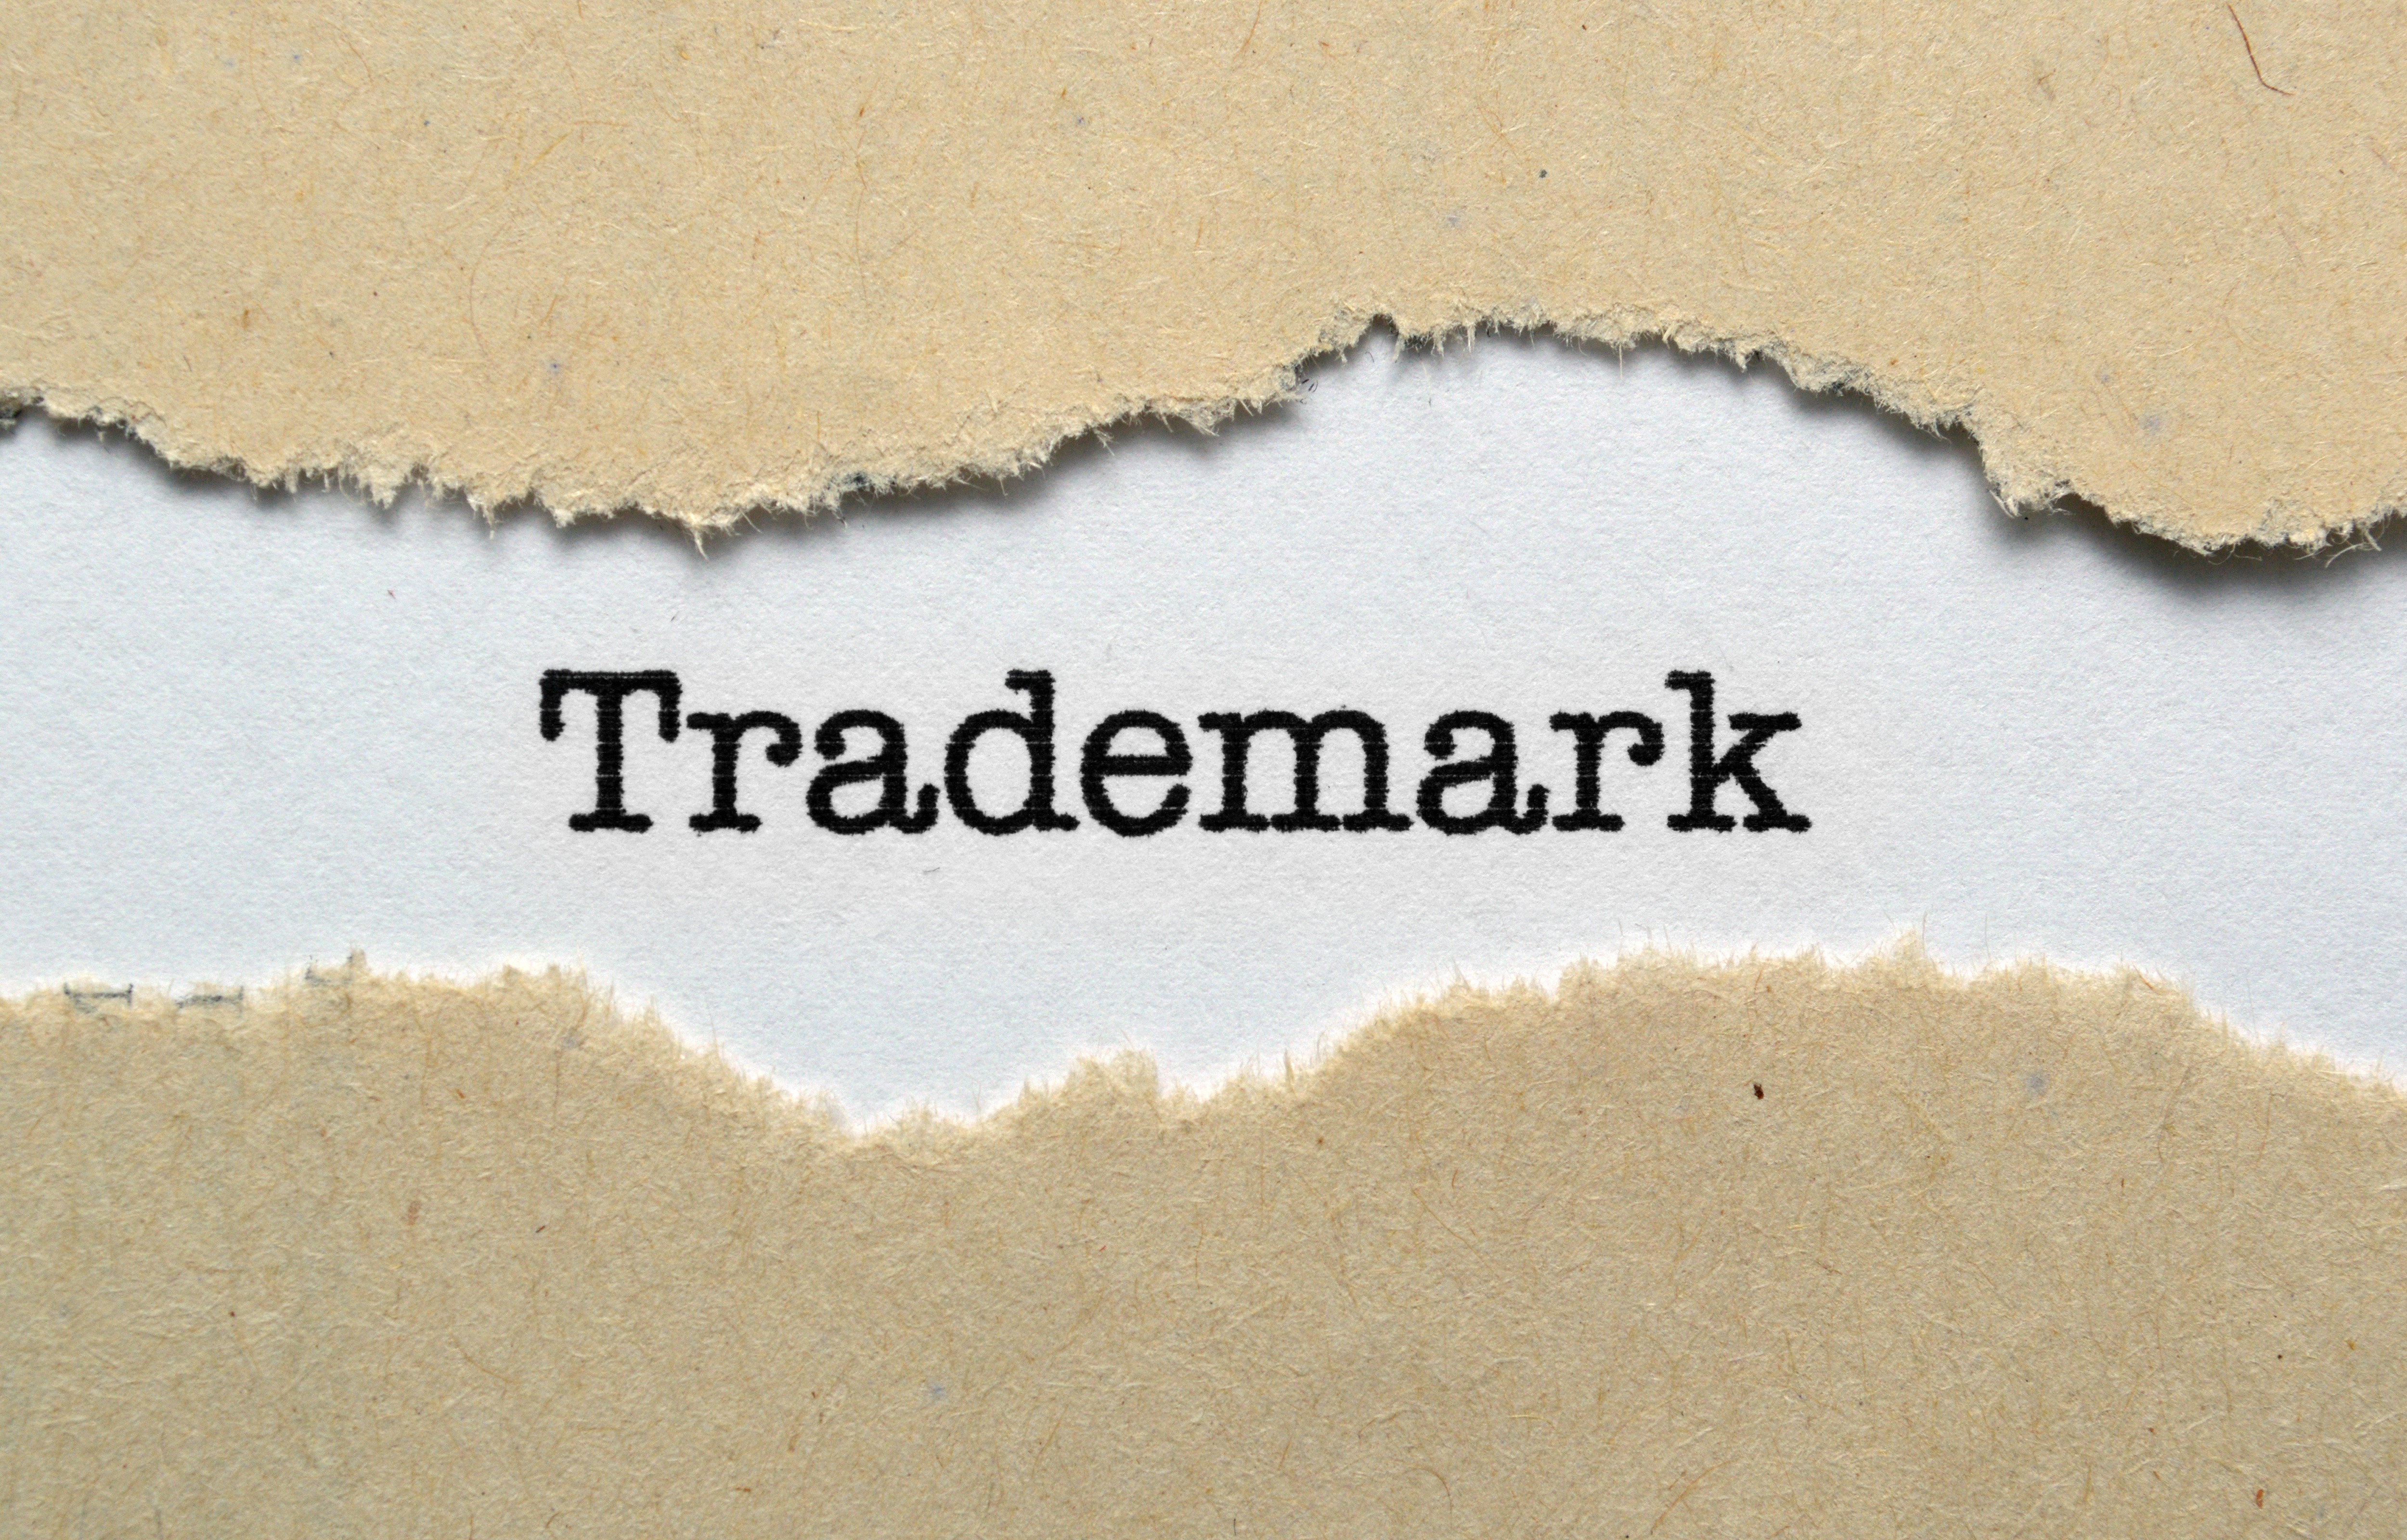 Trademark registration in Dubai